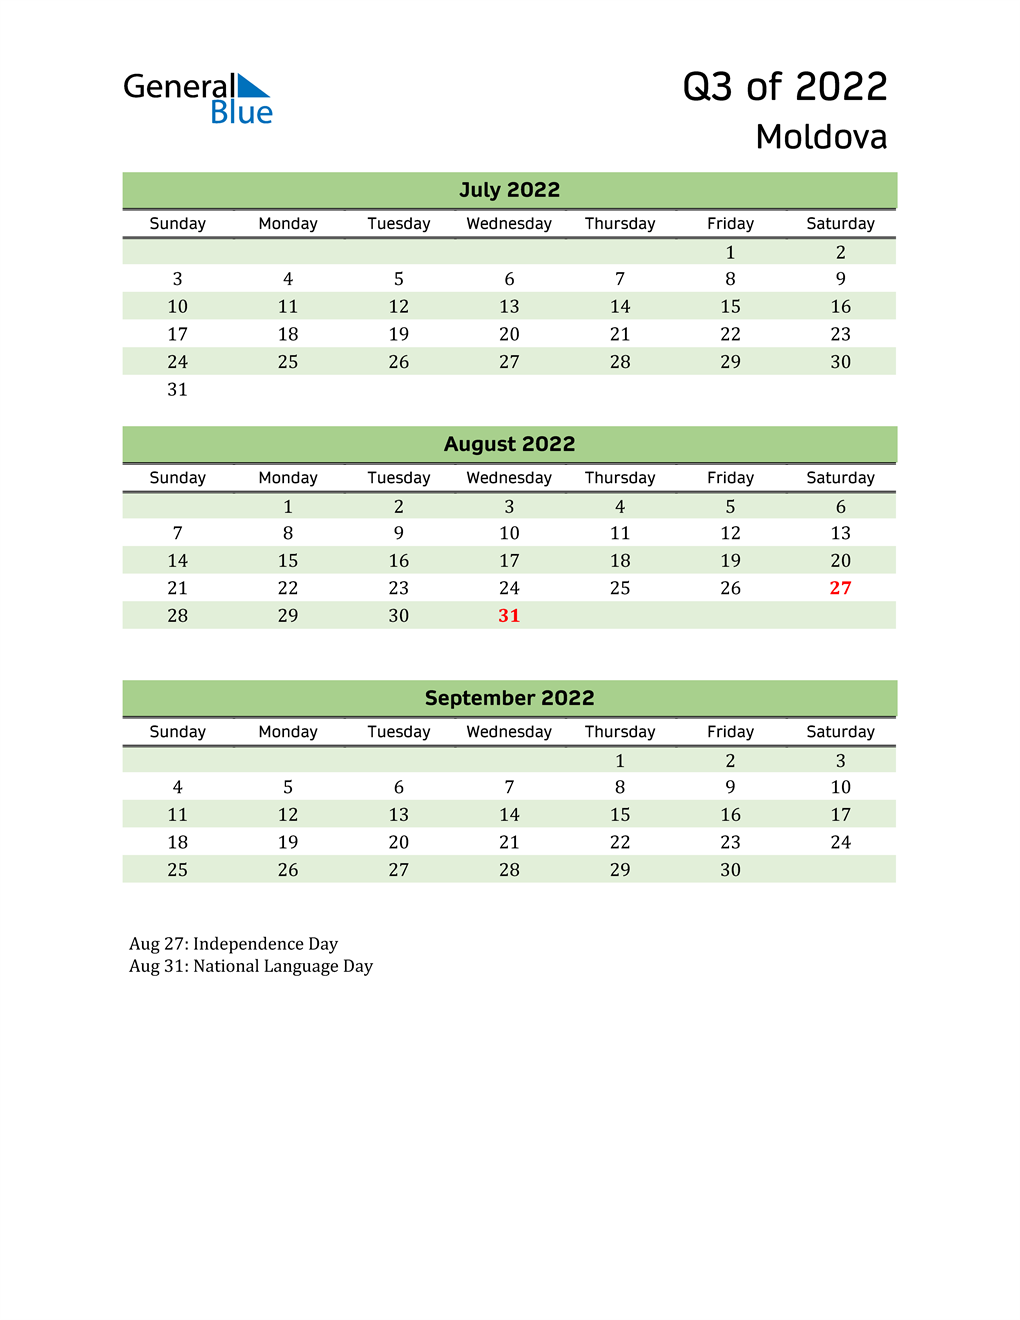  Quarterly Calendar 2022 with Moldova Holidays 